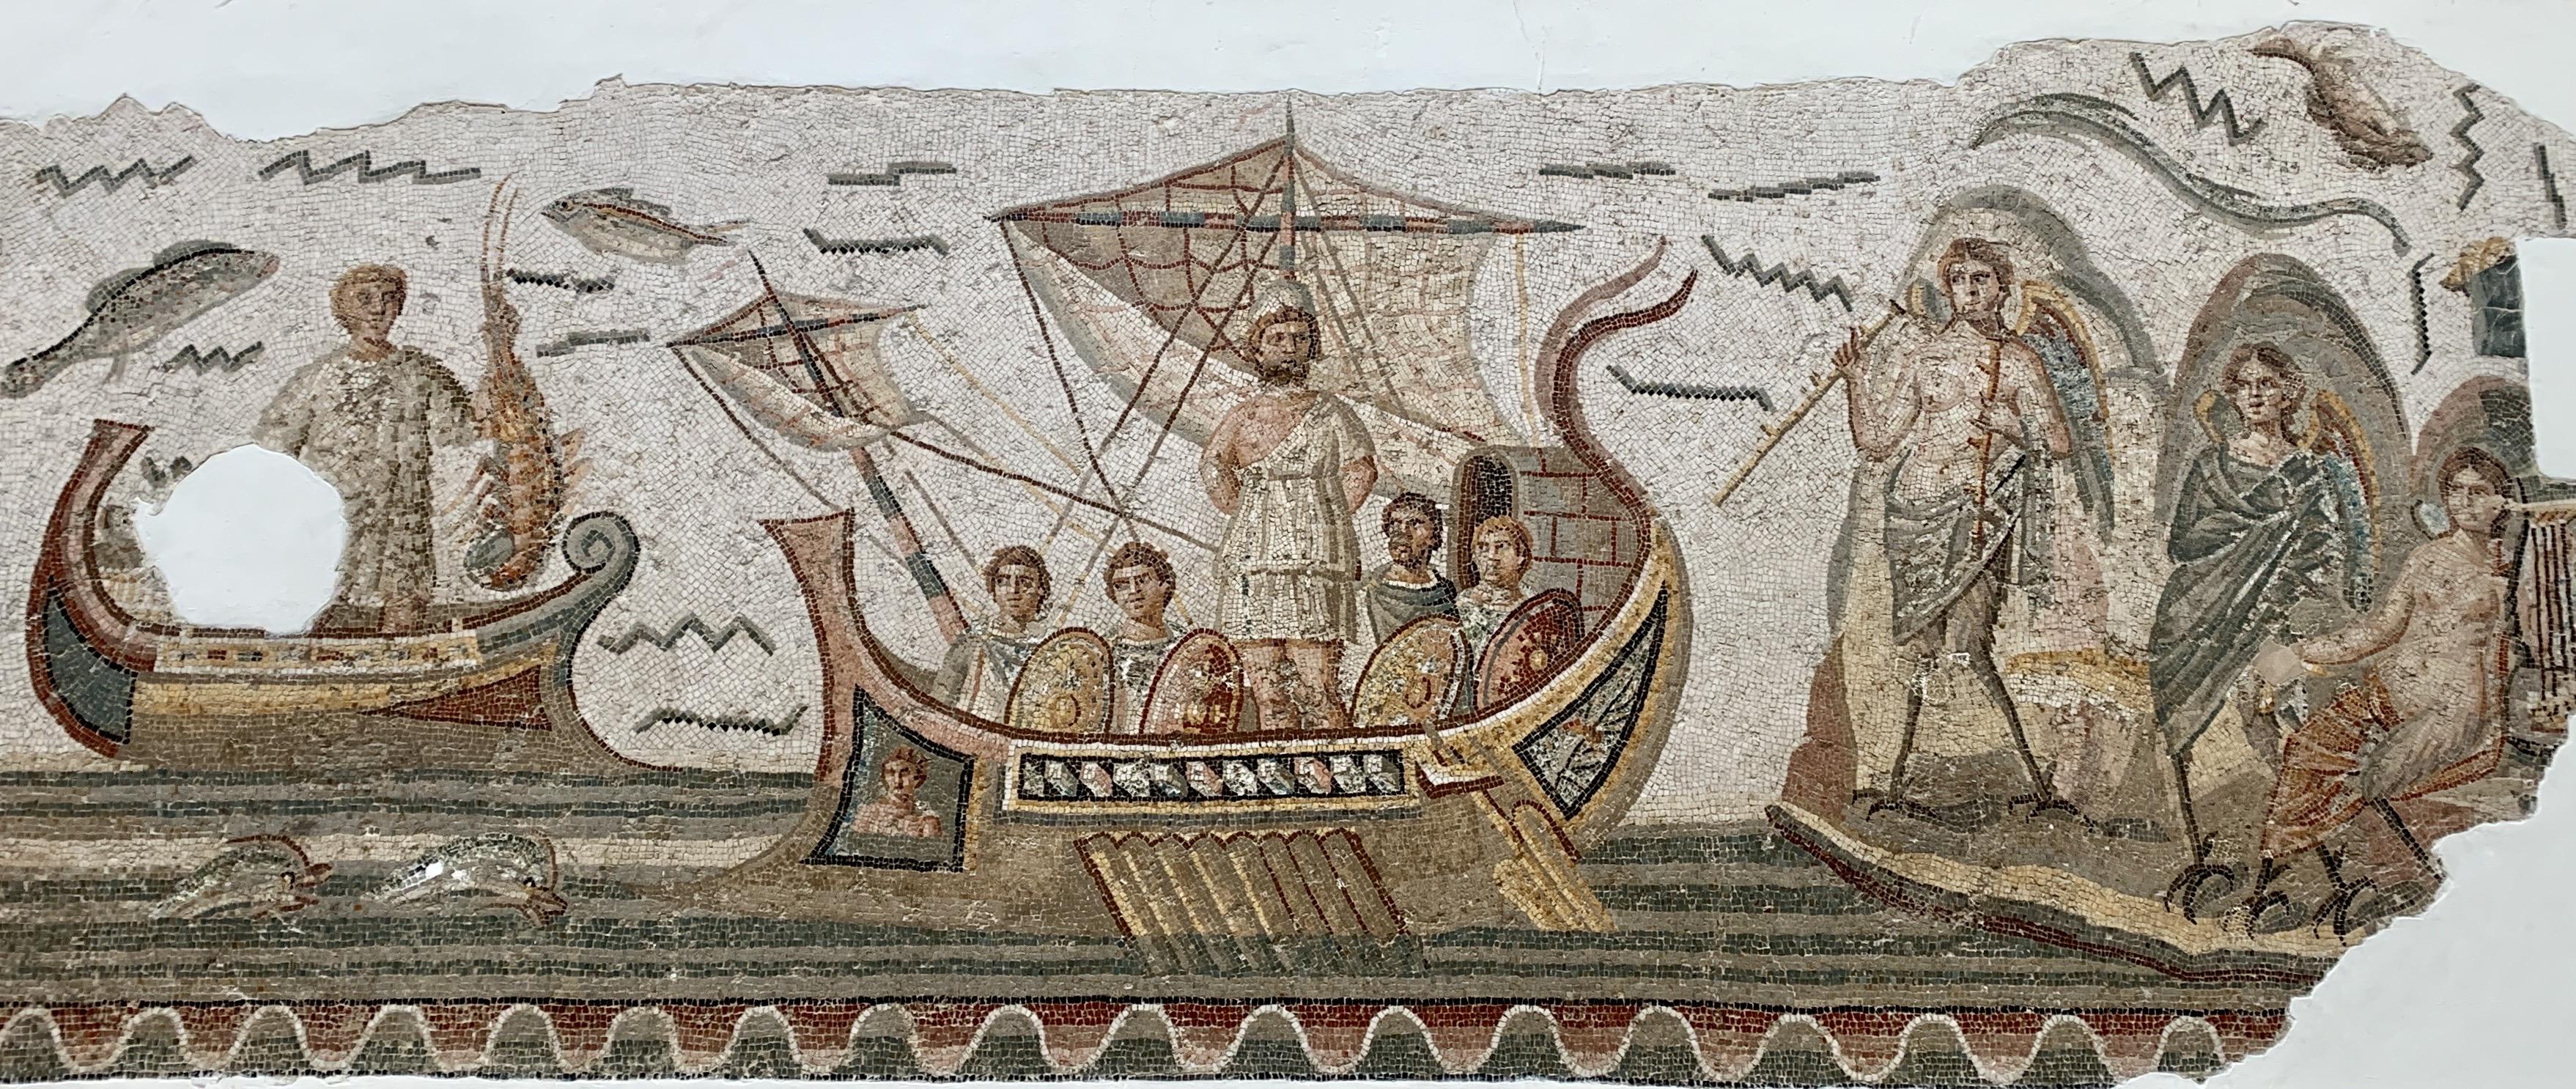 Ο Οδυσσέας και οι Σειρήνες, ψηφιδωτό από την Οικία του Οδυσσέα στη Thugga, Εθνικό Μουσείο του Μπάρντο, Μπάρντο, Τυνησία.